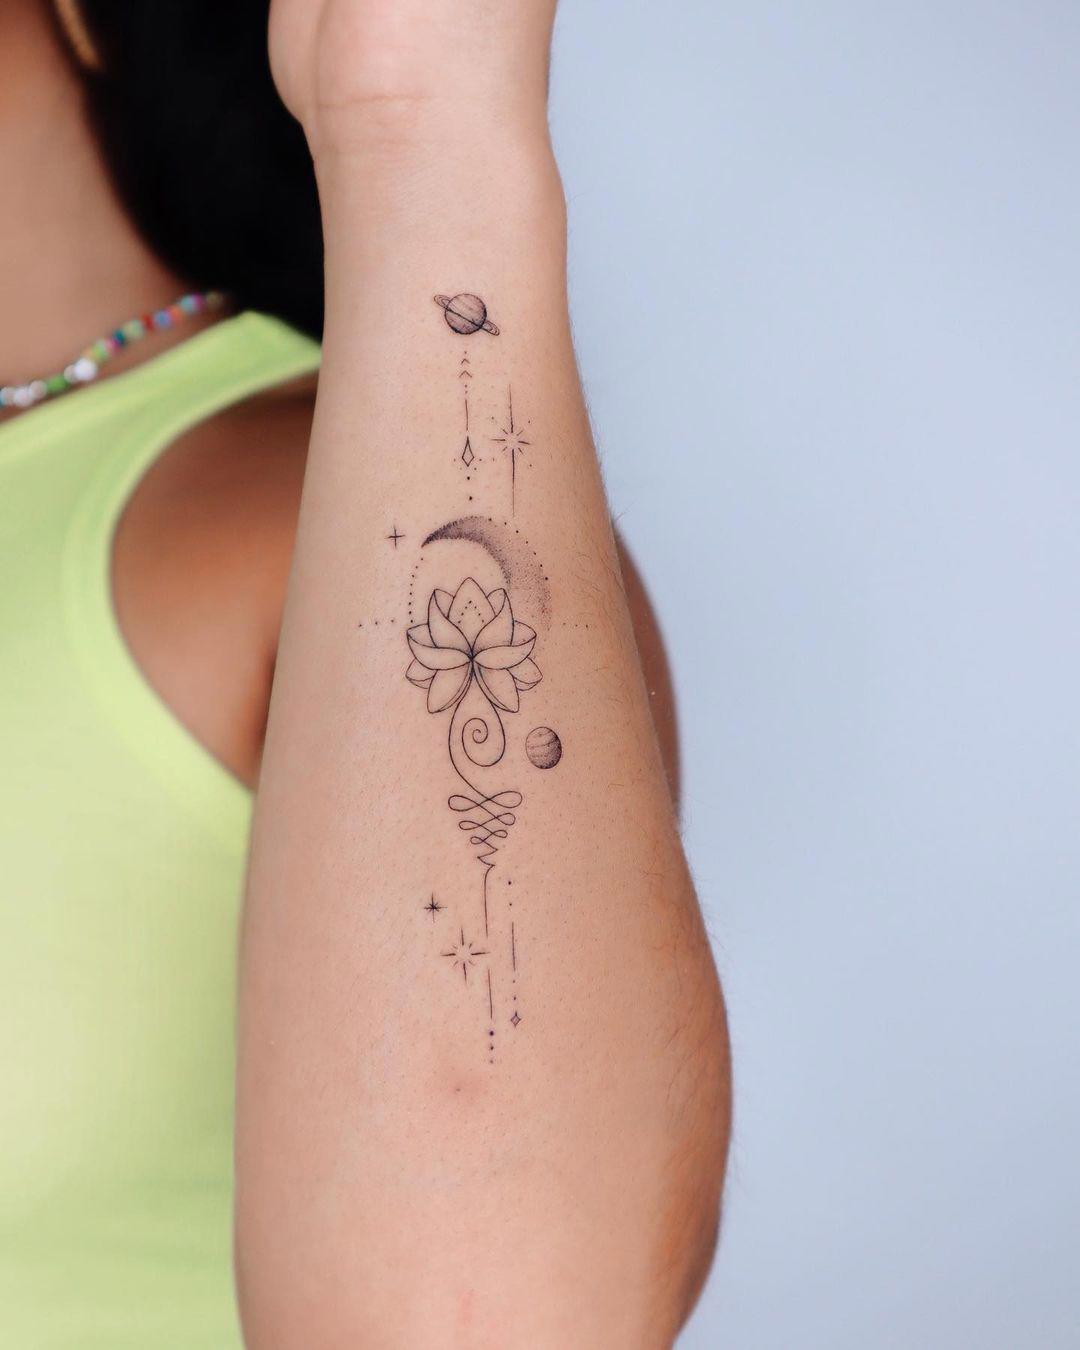 La flor de loto y el cosmos tatuados